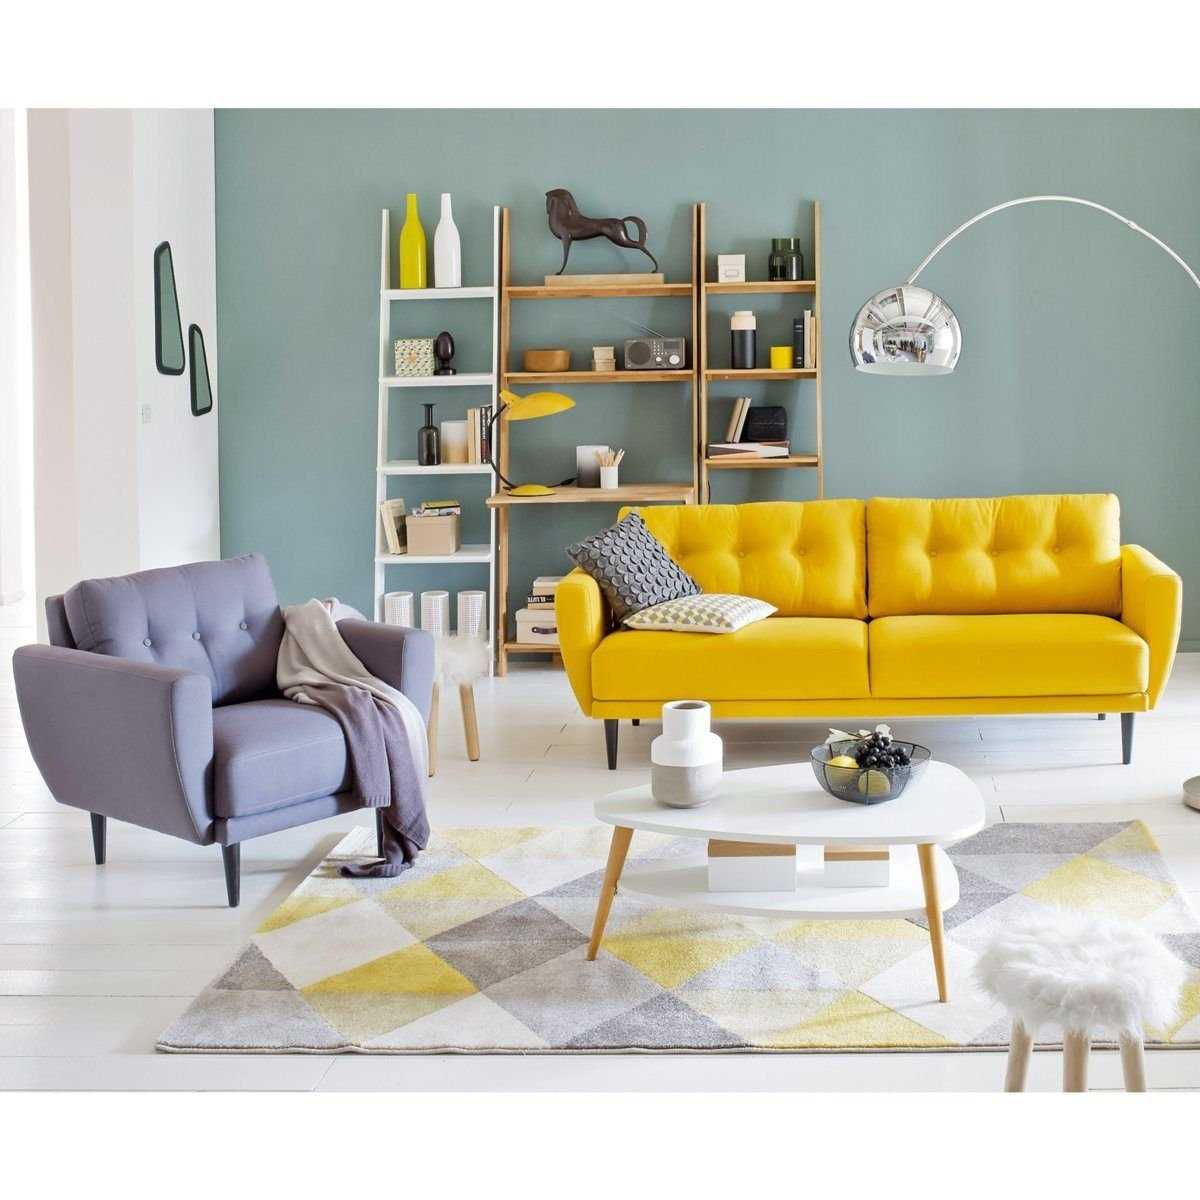 Желтый диван в интерьере: солнечный акцент вашего дома